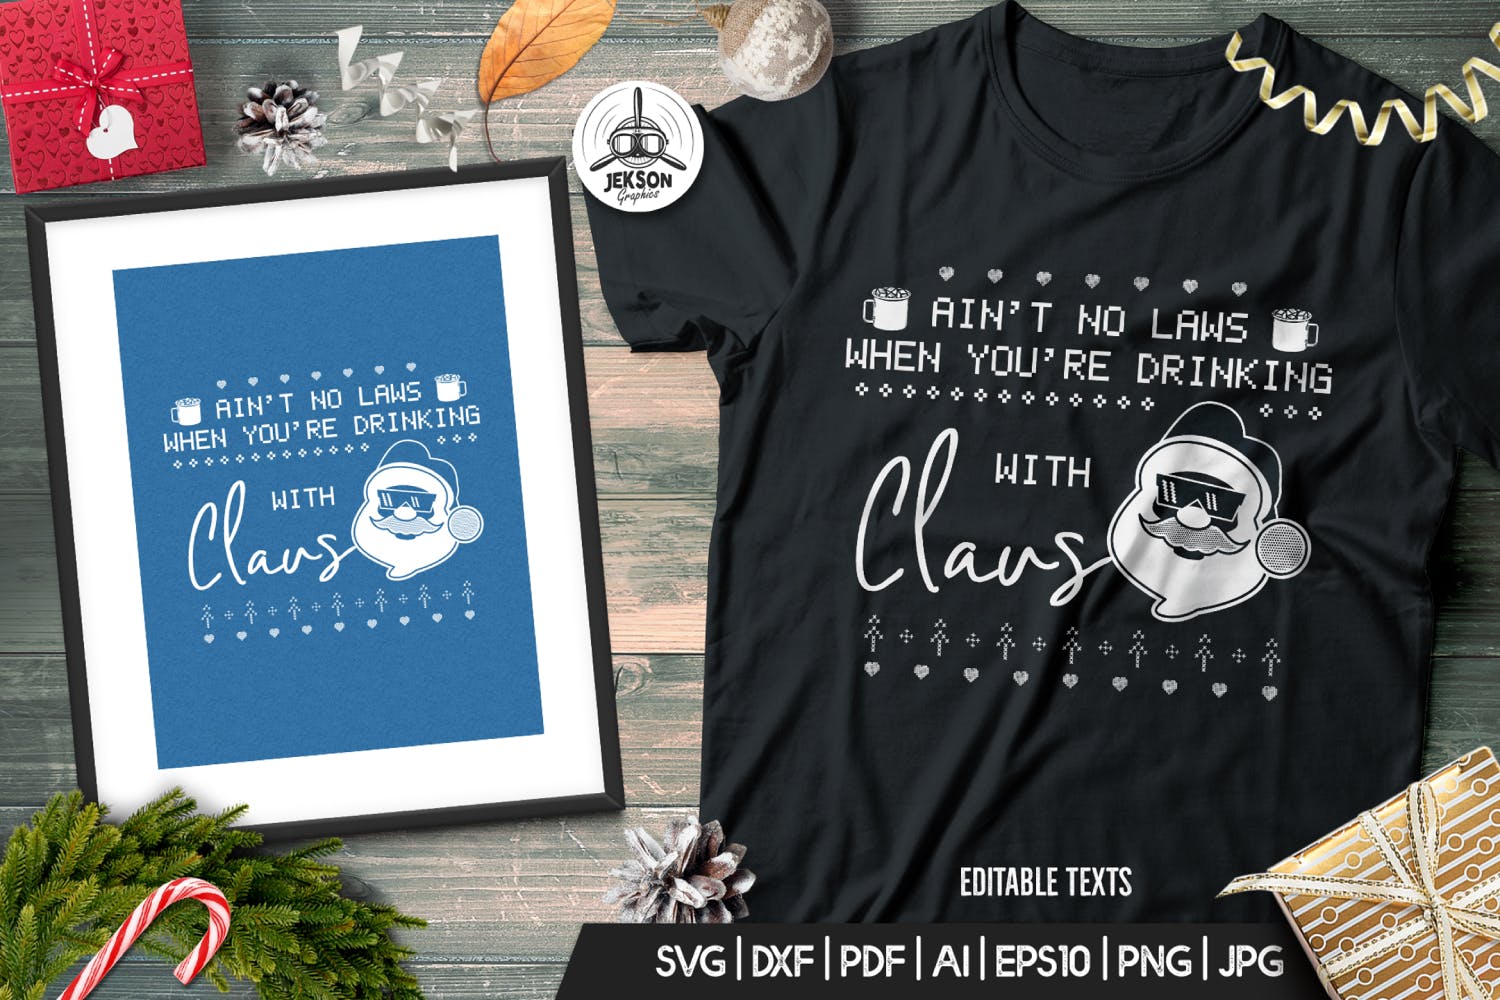 情人套装圣诞节主题T恤圣诞老人印花图案设计素材 Santa Christmas Ugly Print Template, TShirt Design插图(1)